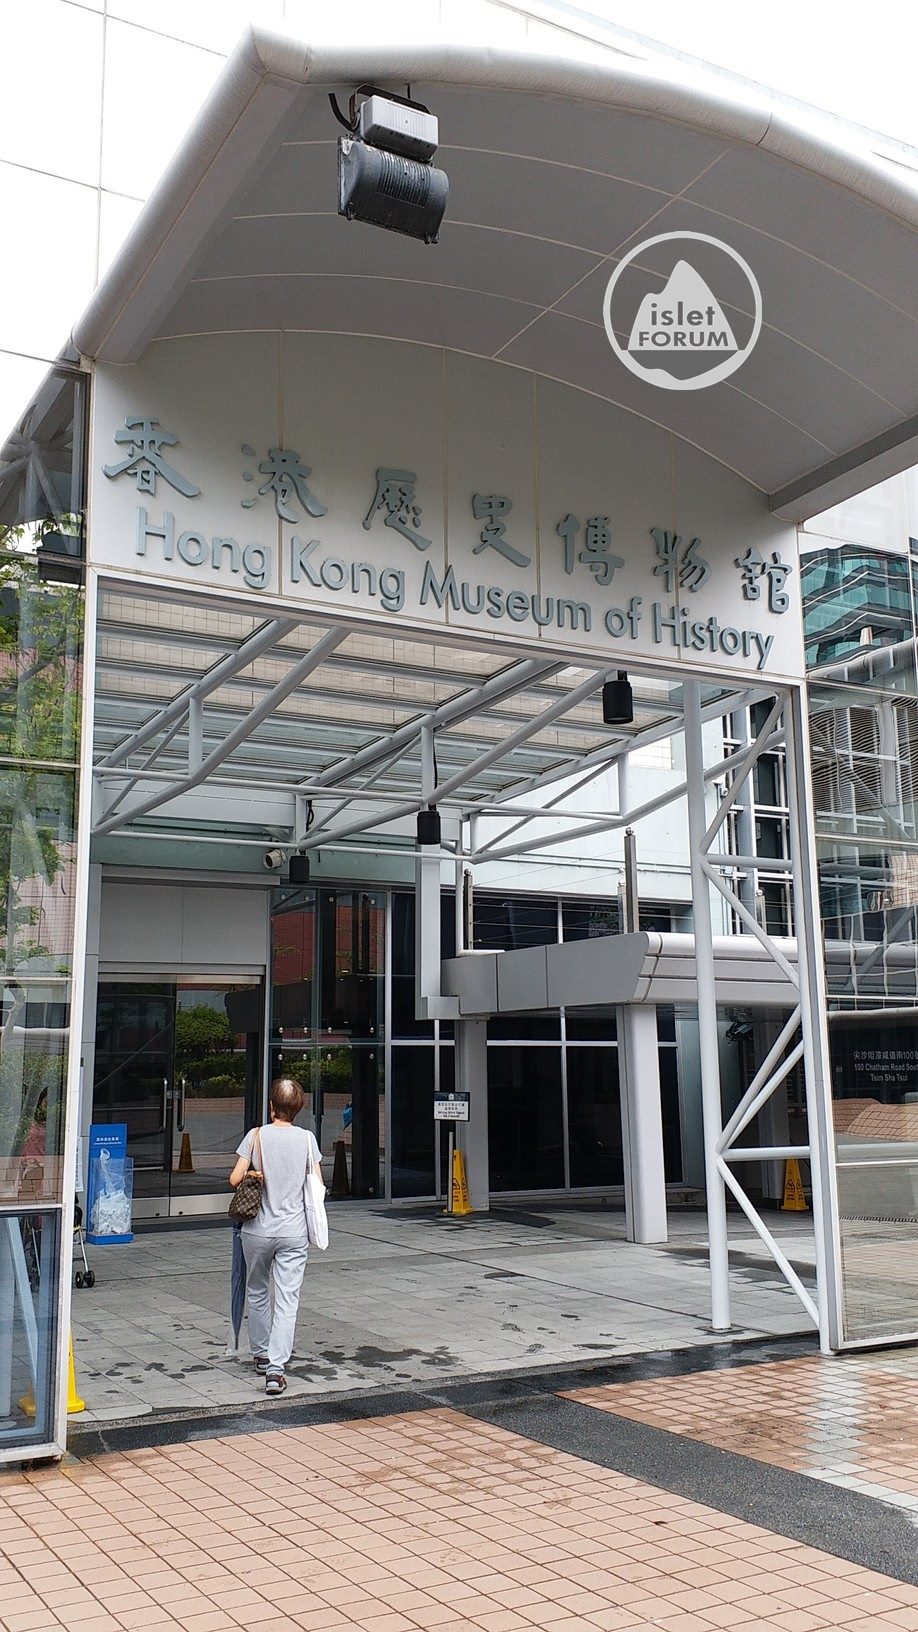 香港歷史博物館 hong kong museum of history 56 (2).jpg